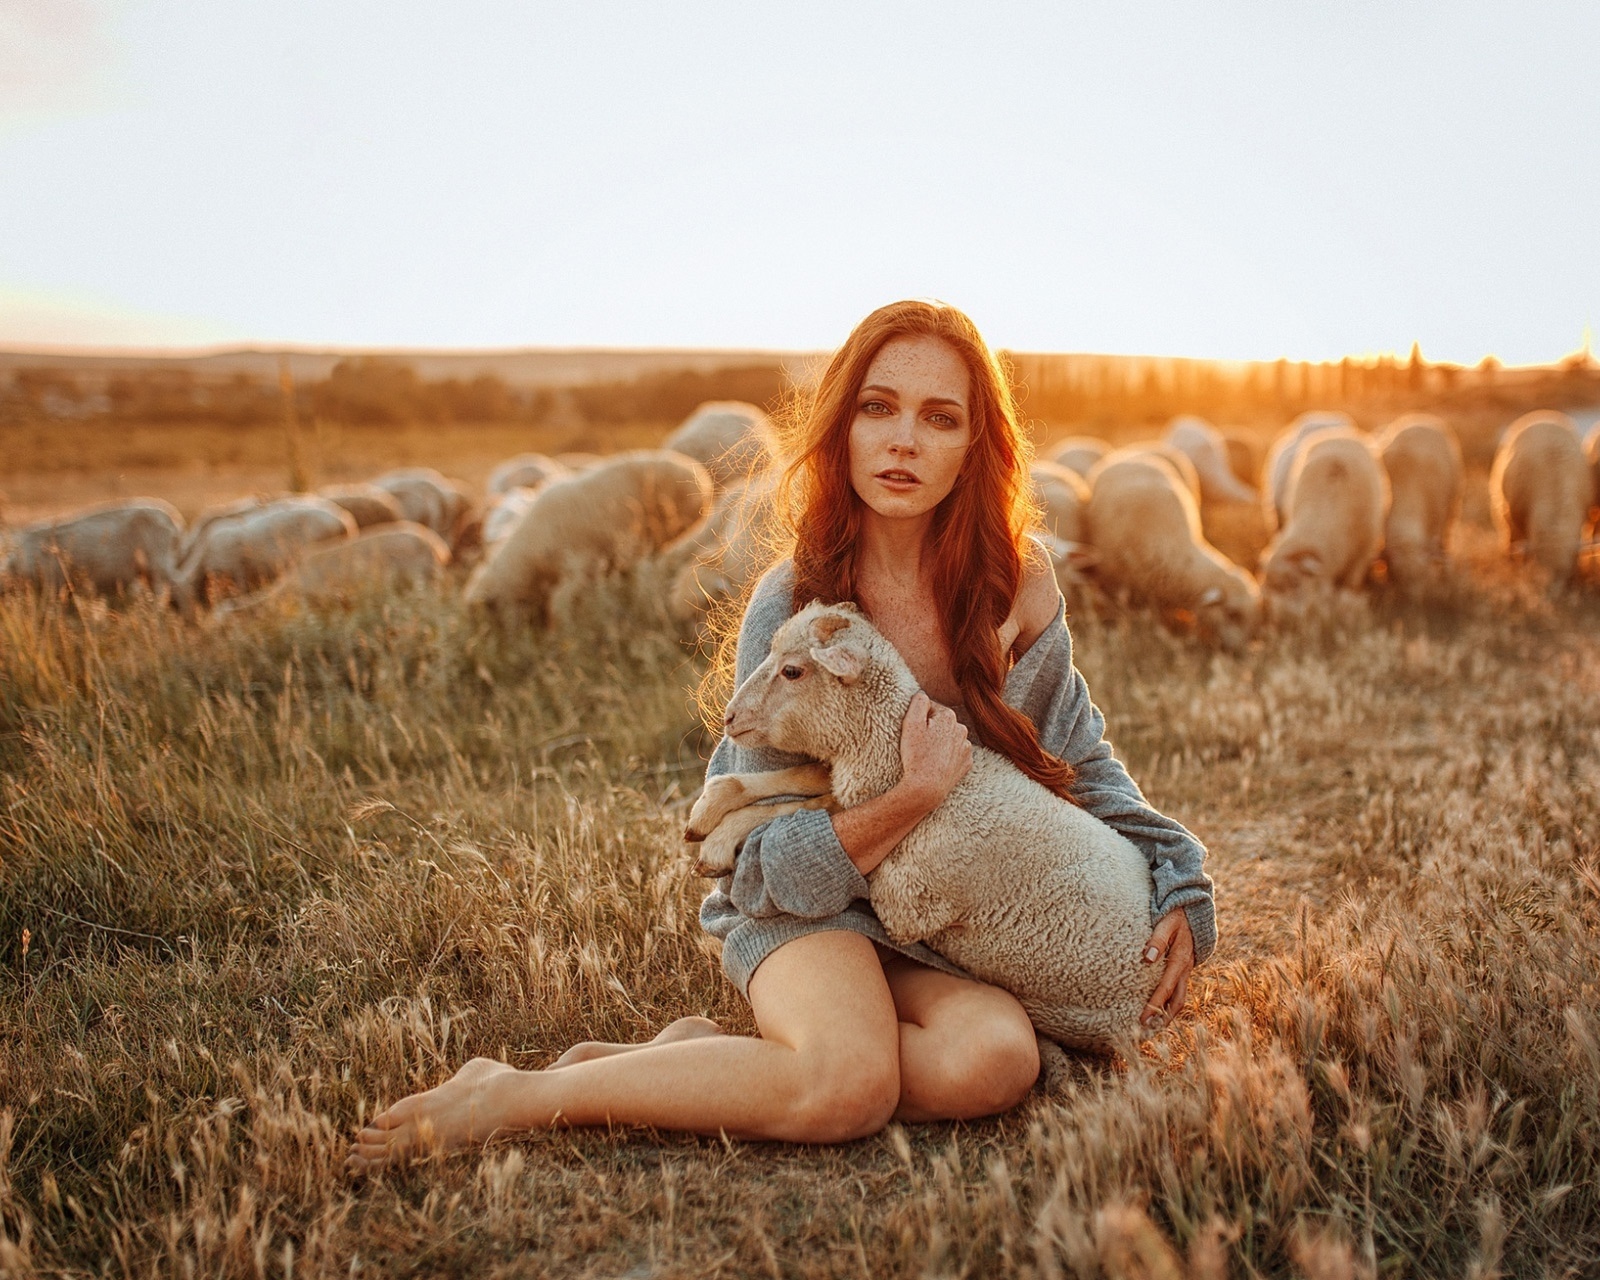 Обои Girl with Sheep 1600x1280